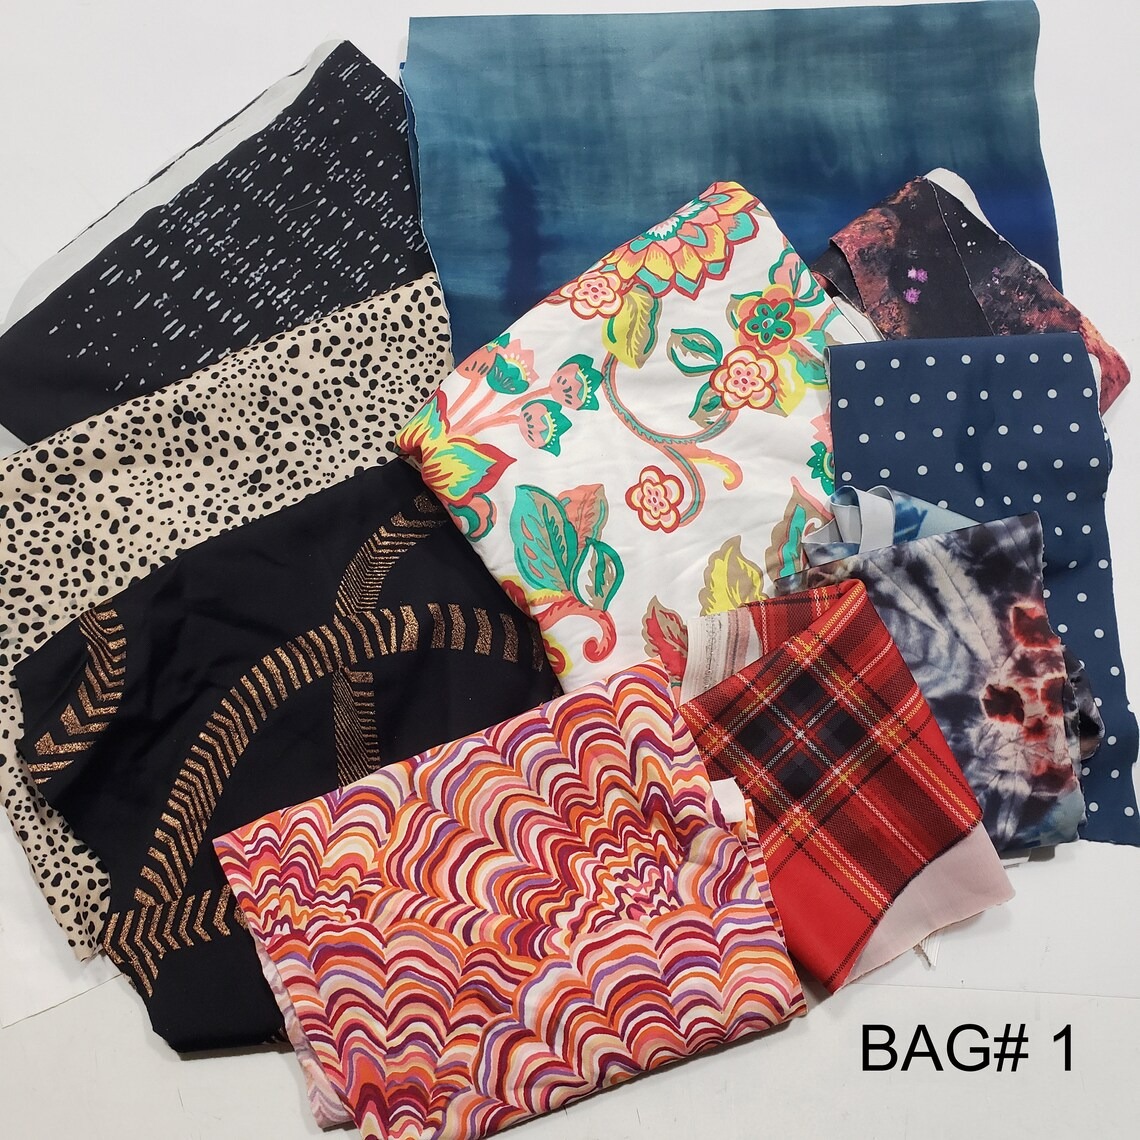 Assorted Spandex Fabric Scraps - 1 Pound Bag